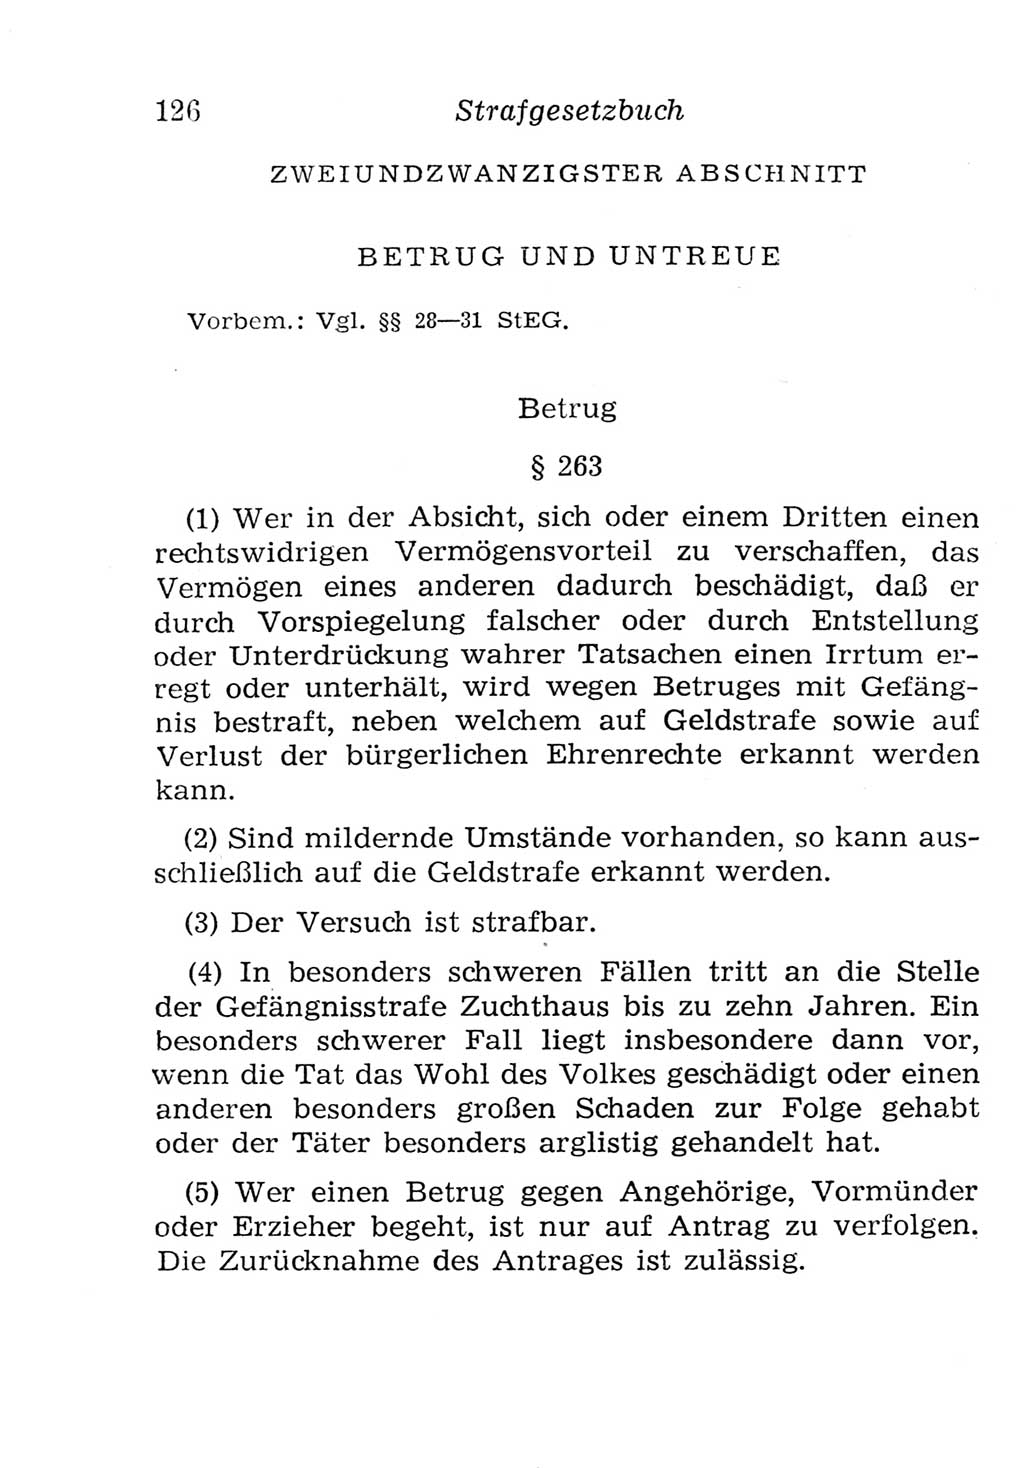 Strafgesetzbuch (StGB) und andere Strafgesetze [Deutsche Demokratische Republik (DDR)] 1957, Seite 126 (StGB Strafges. DDR 1957, S. 126)